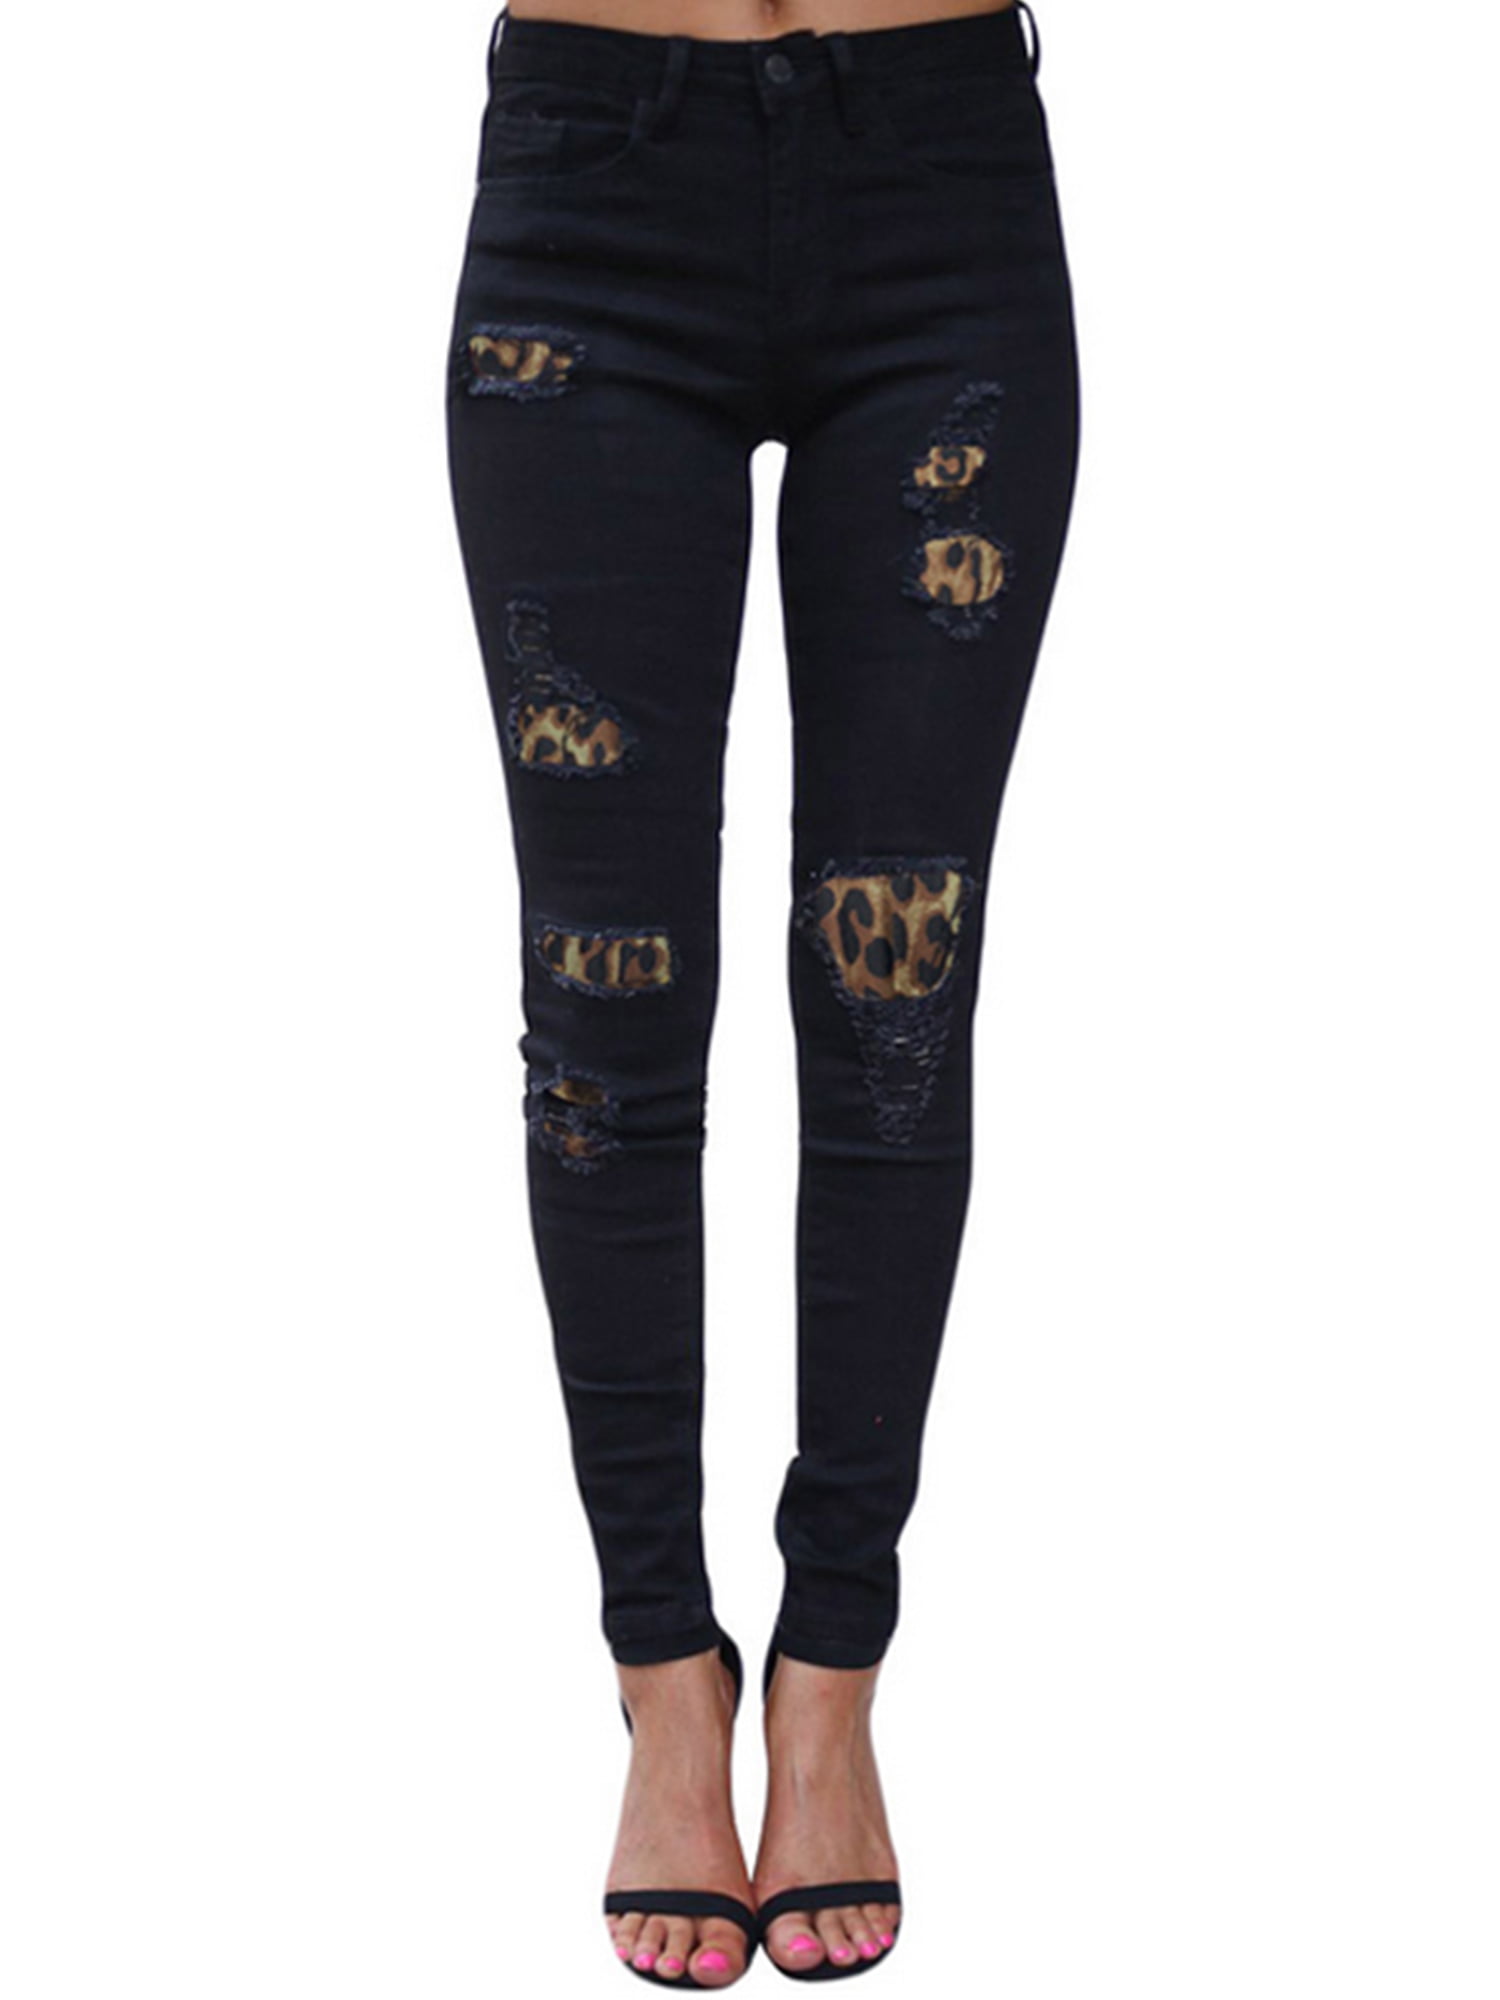 Women's Wet Look Skinny Jeans Leopard Look Trouser Ripped Style size 8-14 